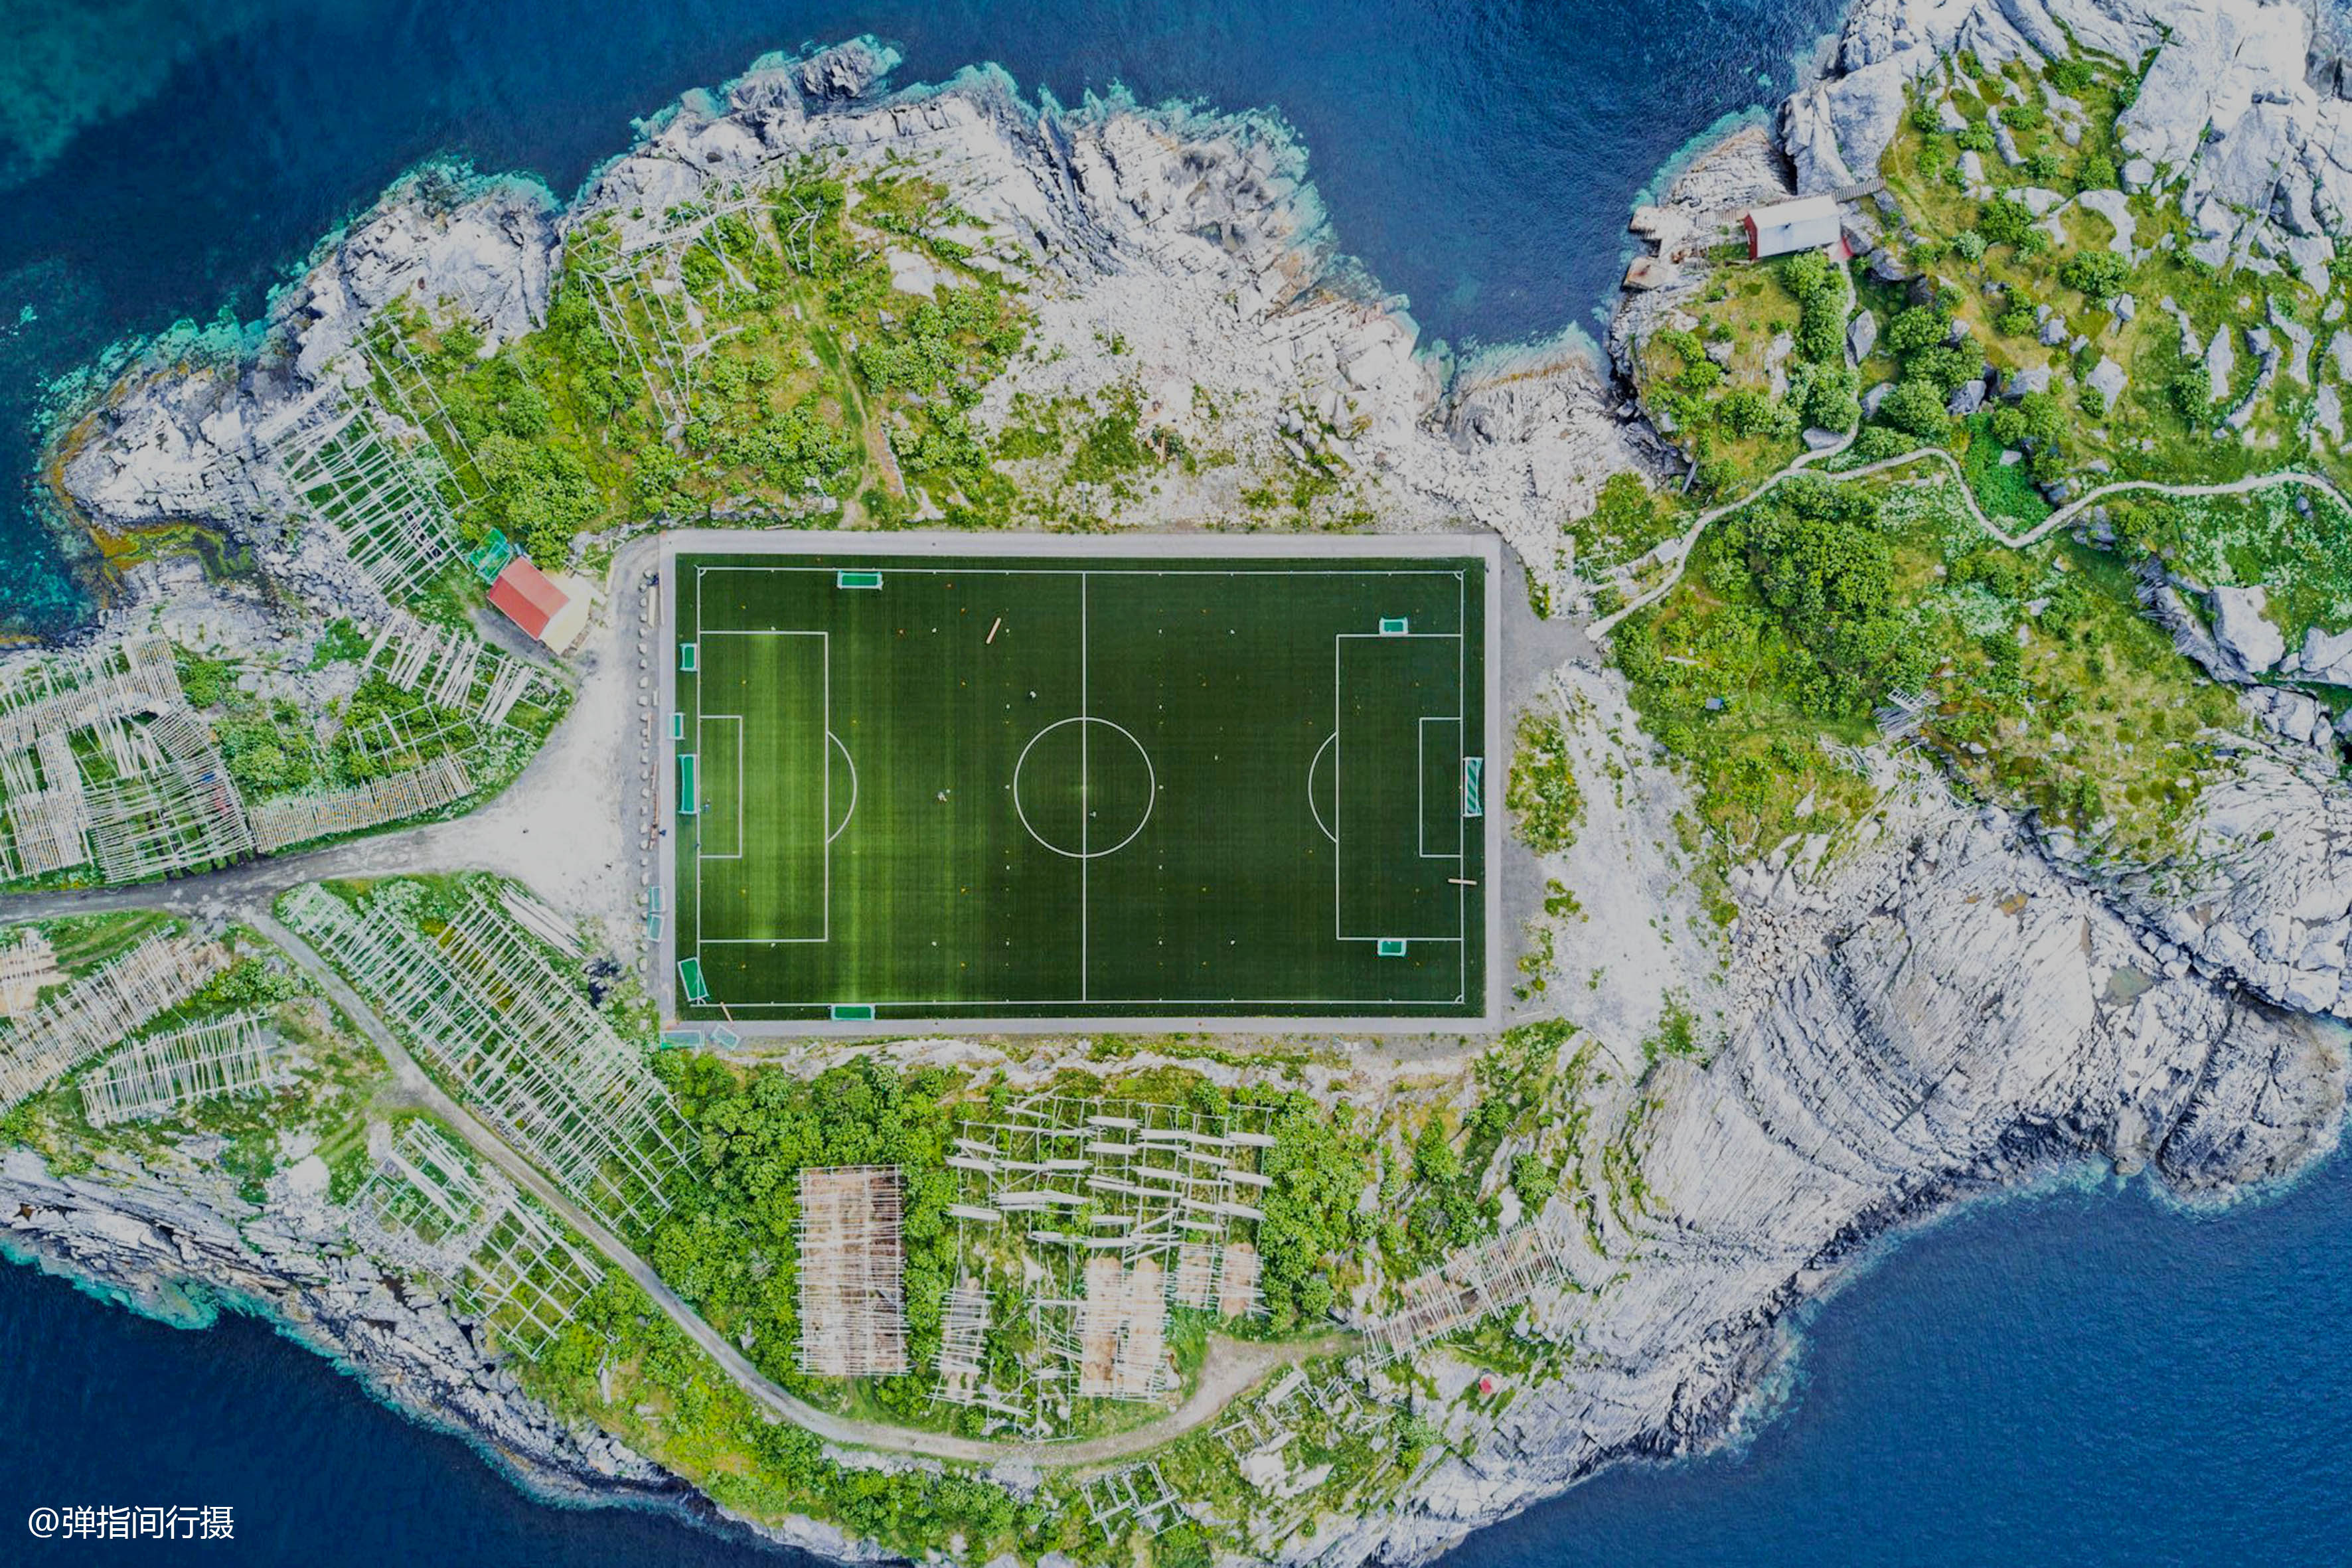 原创挪威有座绝美足球场建在北极圈里的小岛上俯瞰像外星人的造物